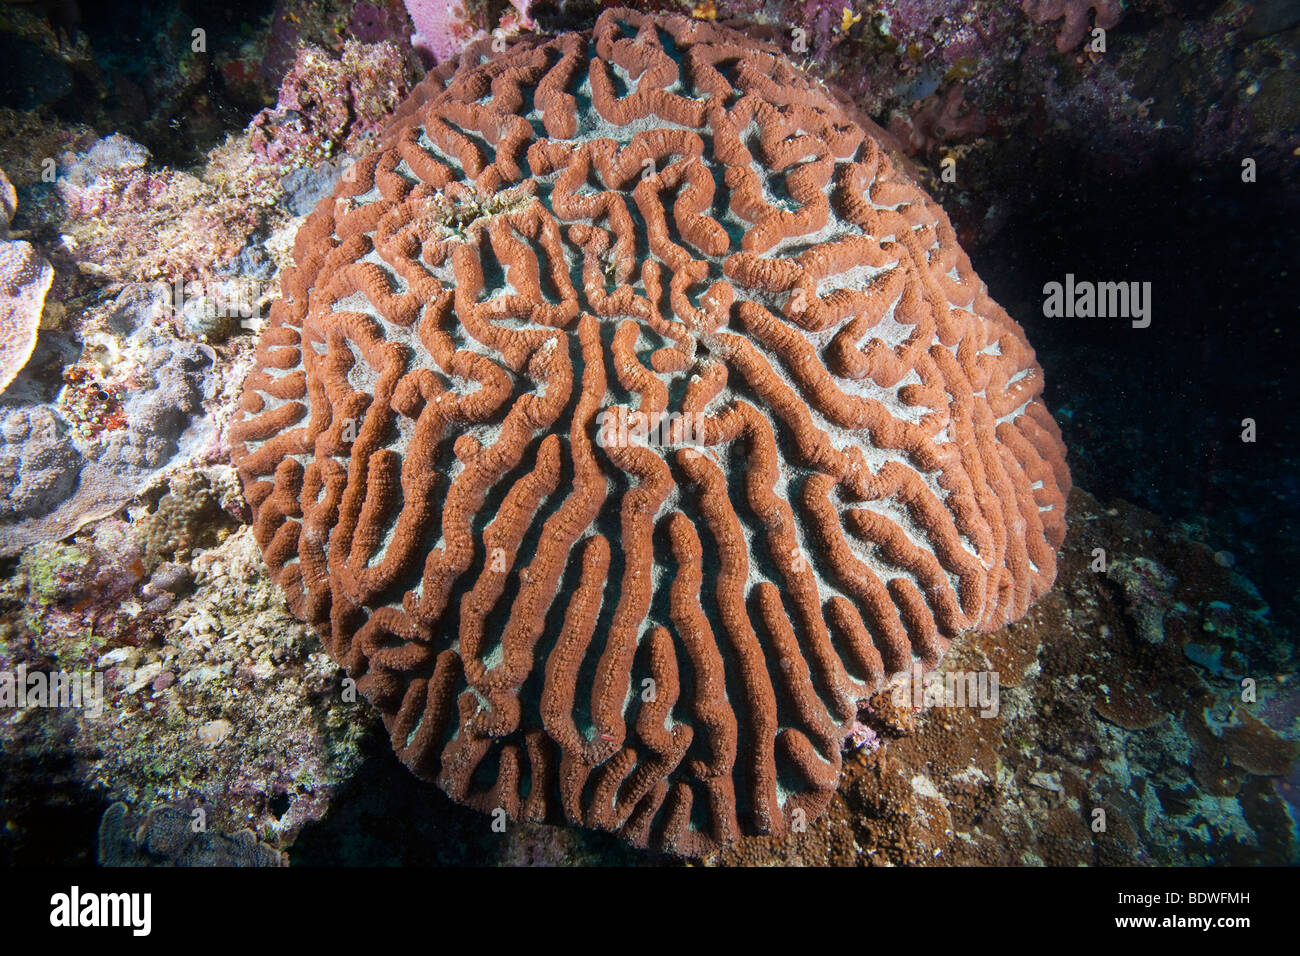 (Platygyra daedalea corail cerveau), Indonésie Banque D'Images